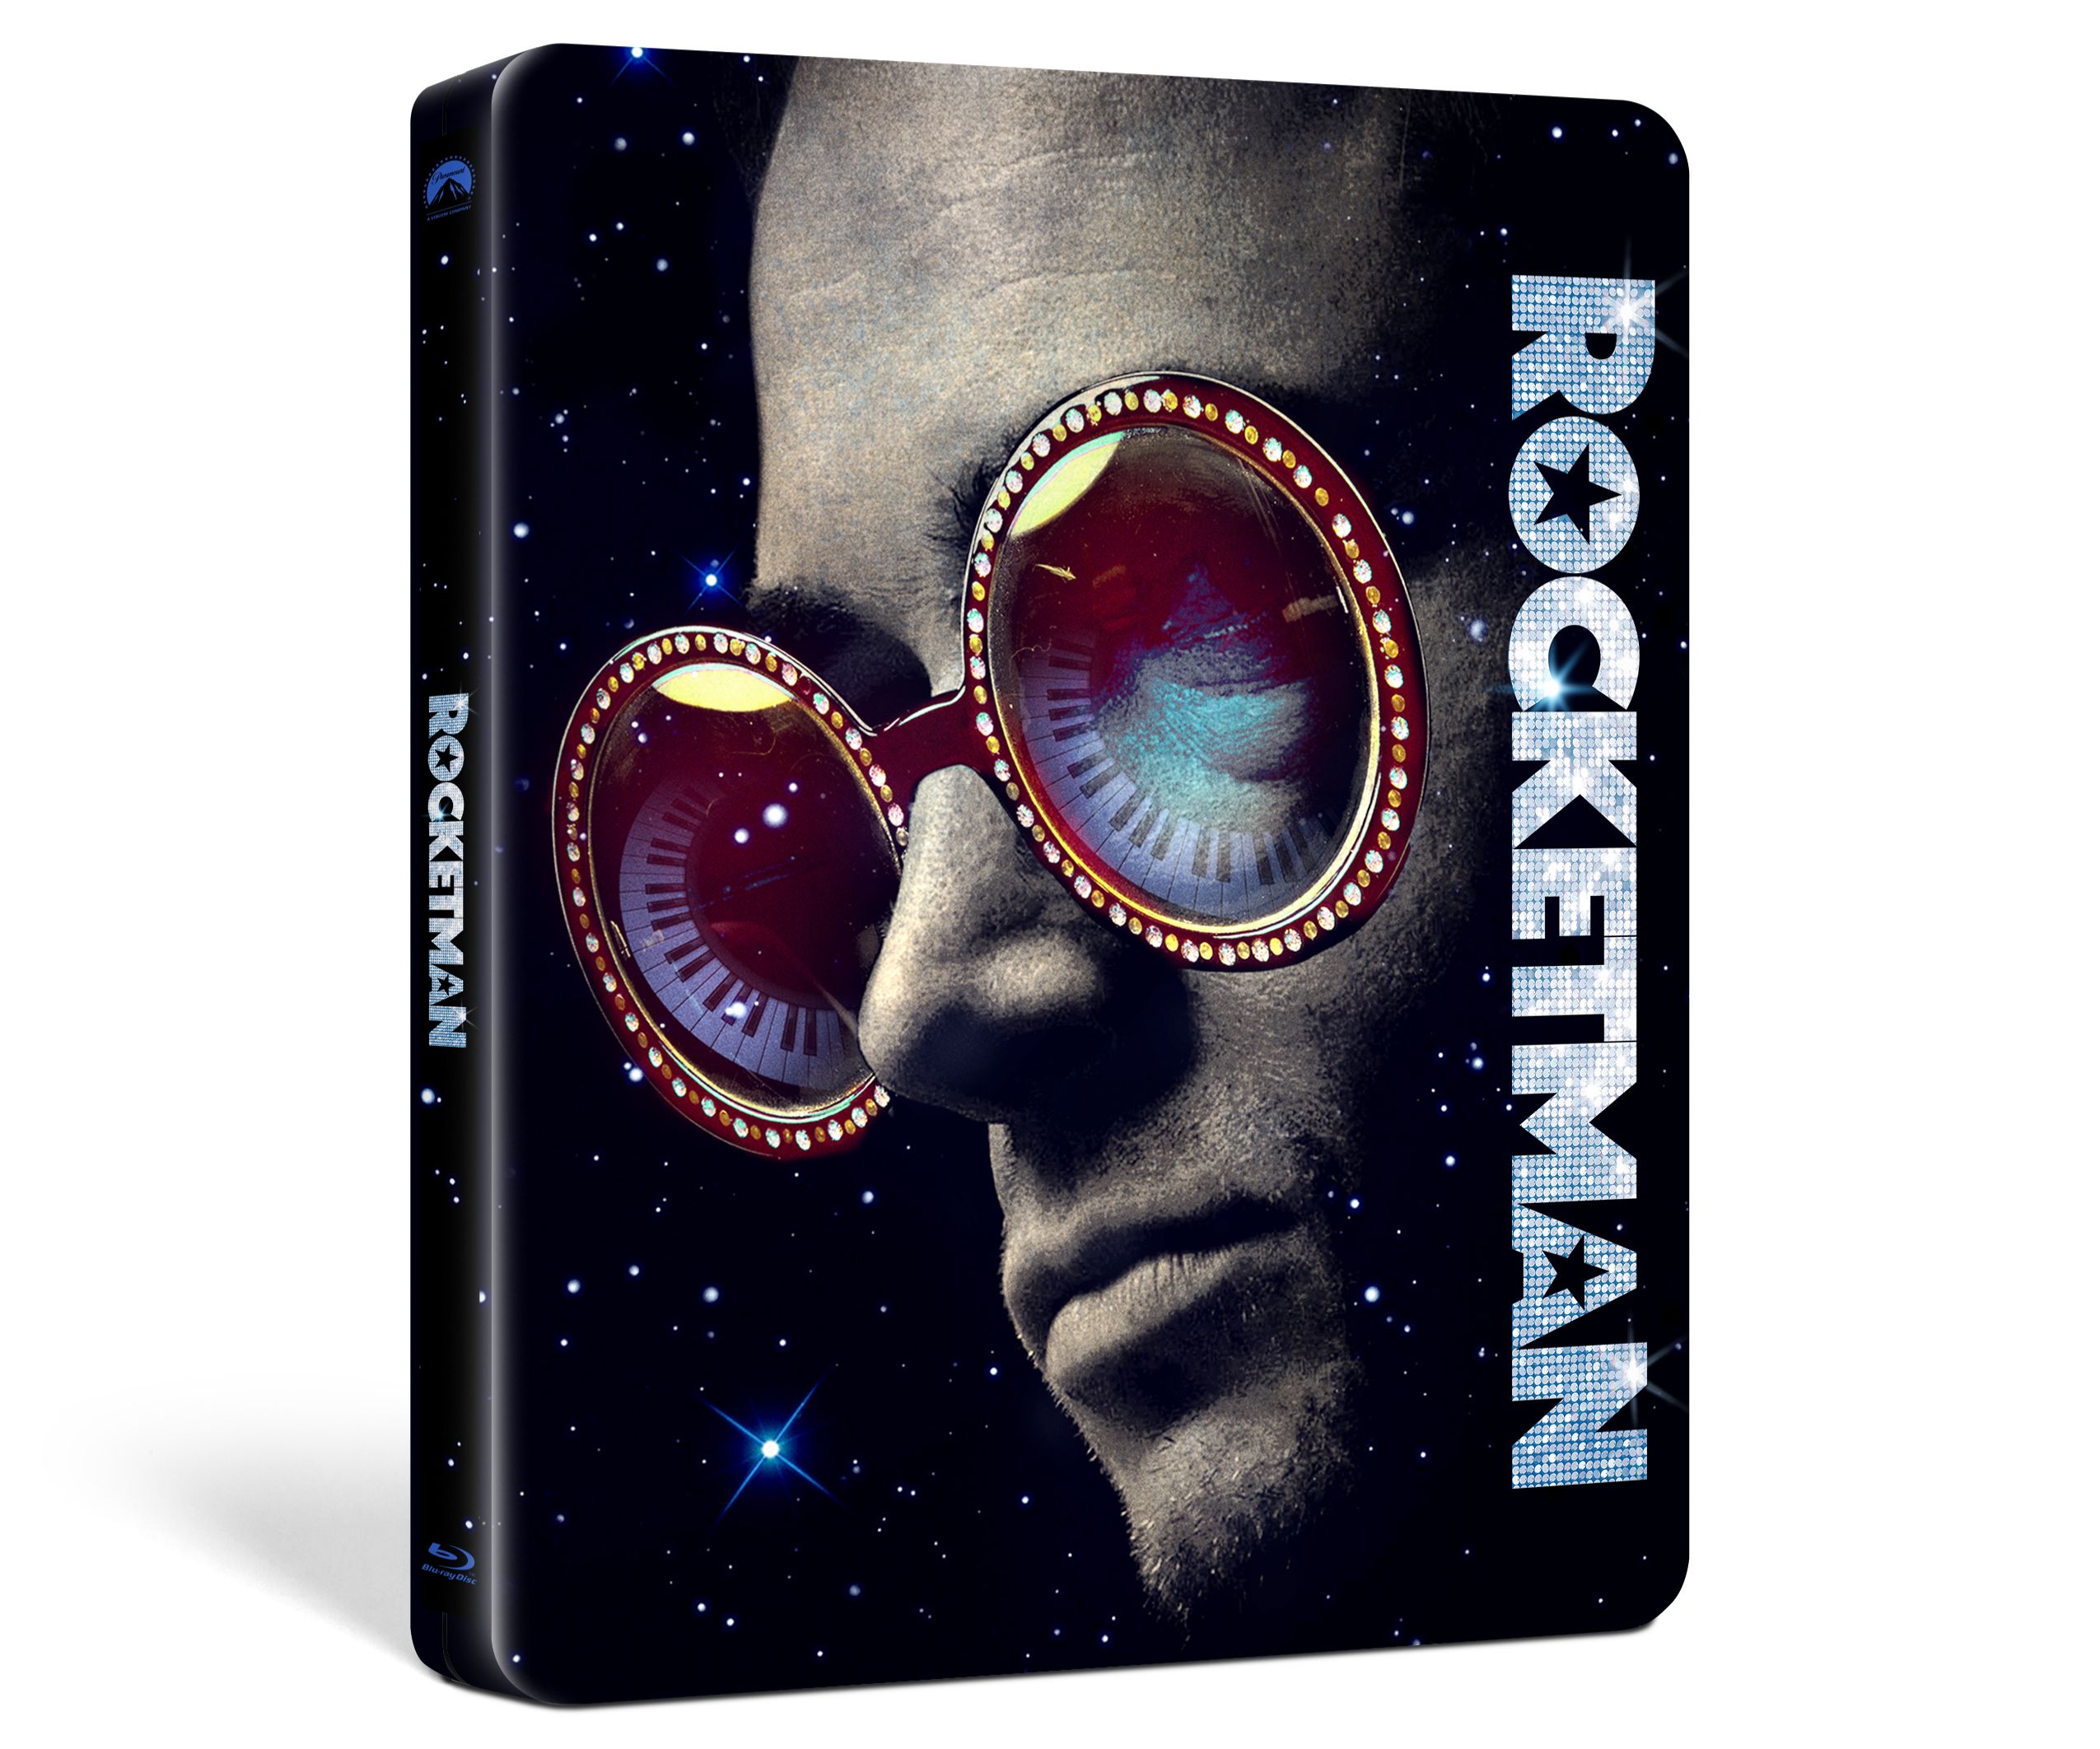 Rocketman Walmart Exclusive Steelbook cover